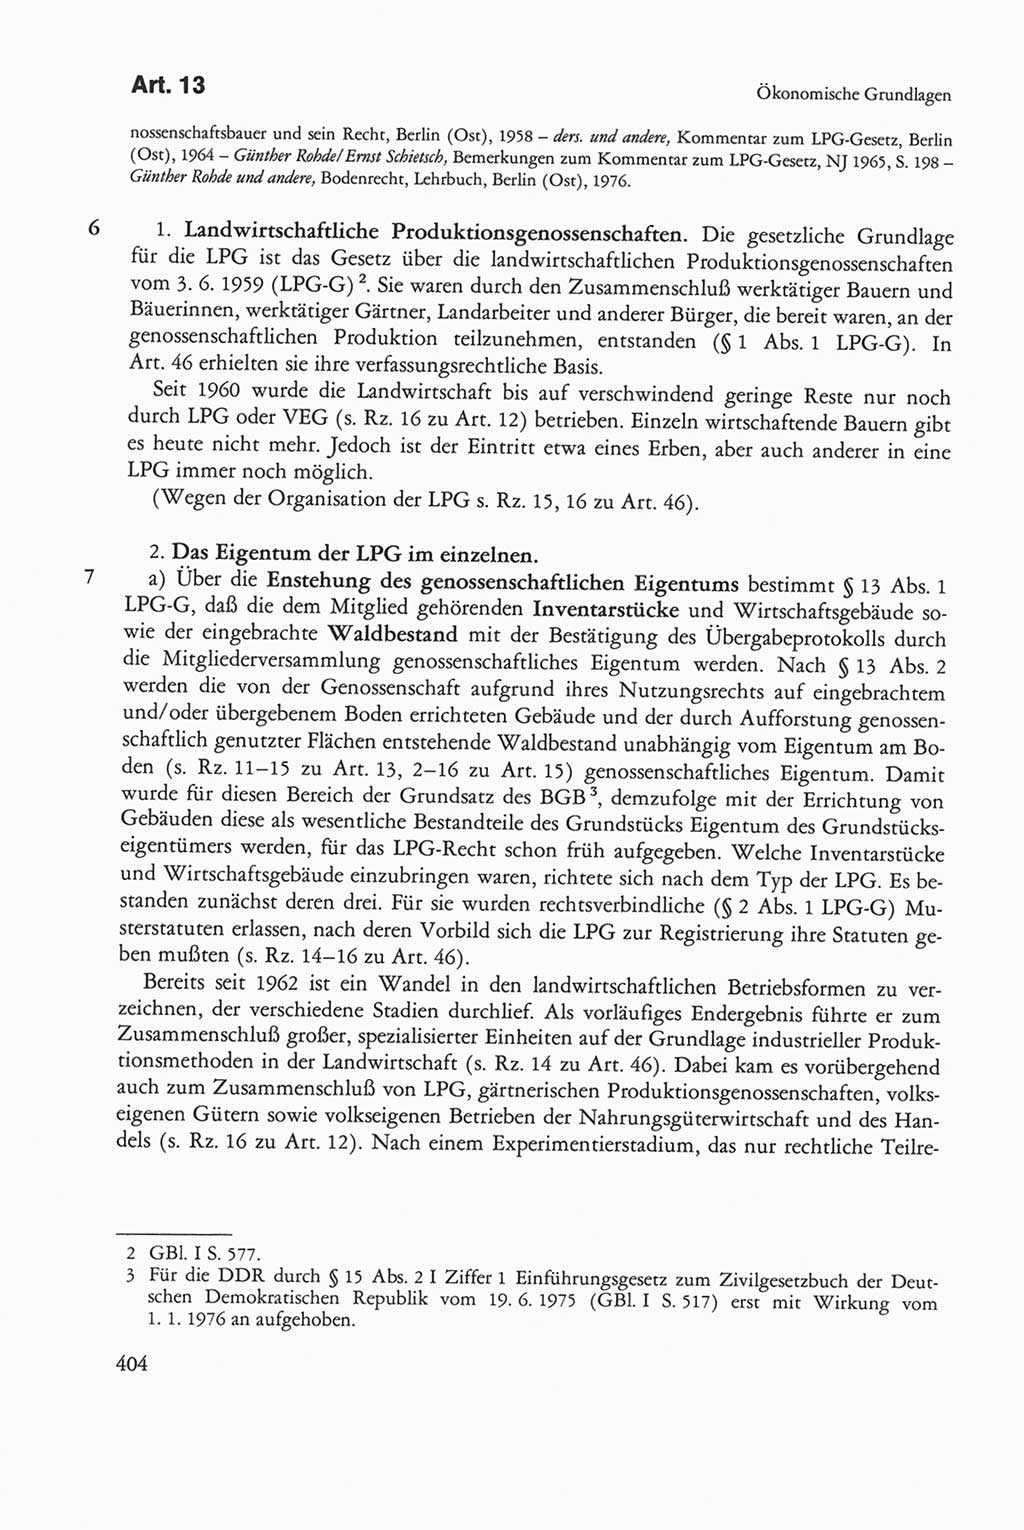 Die sozialistische Verfassung der Deutschen Demokratischen Republik (DDR), Kommentar mit einem Nachtrag 1997, Seite 404 (Soz. Verf. DDR Komm. Nachtr. 1997, S. 404)